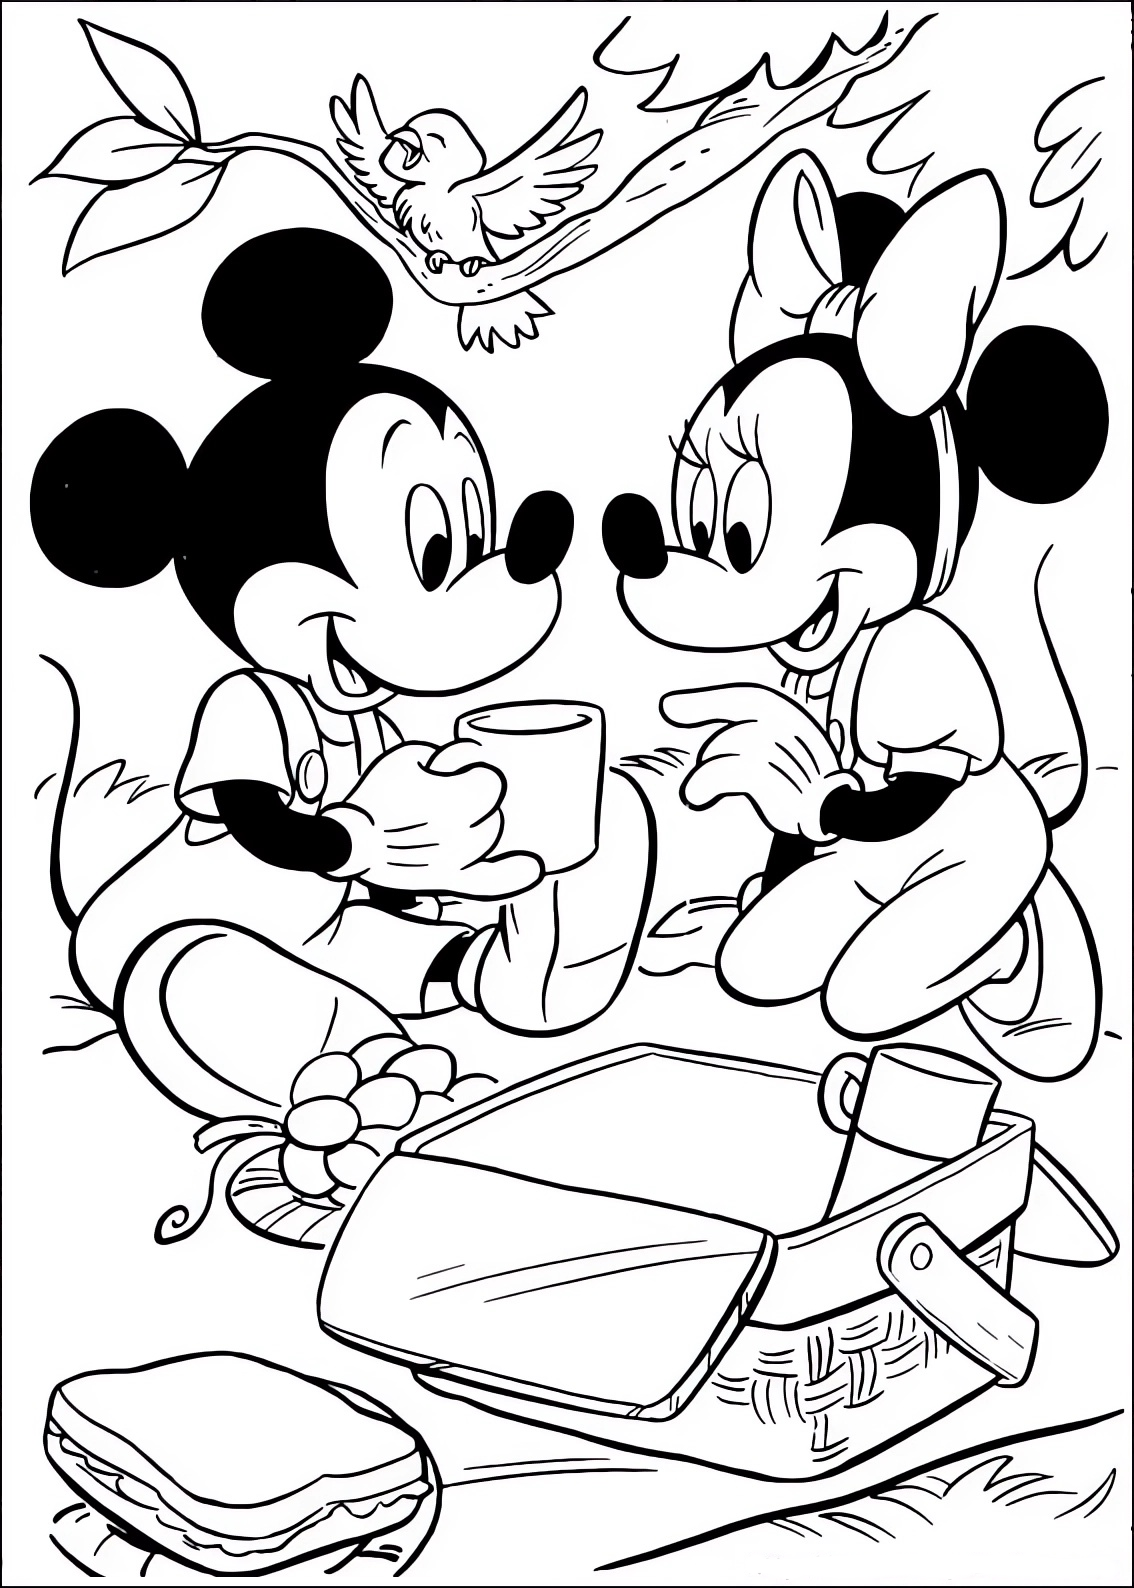 Disegno da colorare di Minnie e Topolino (Mickey Mouse) in gita